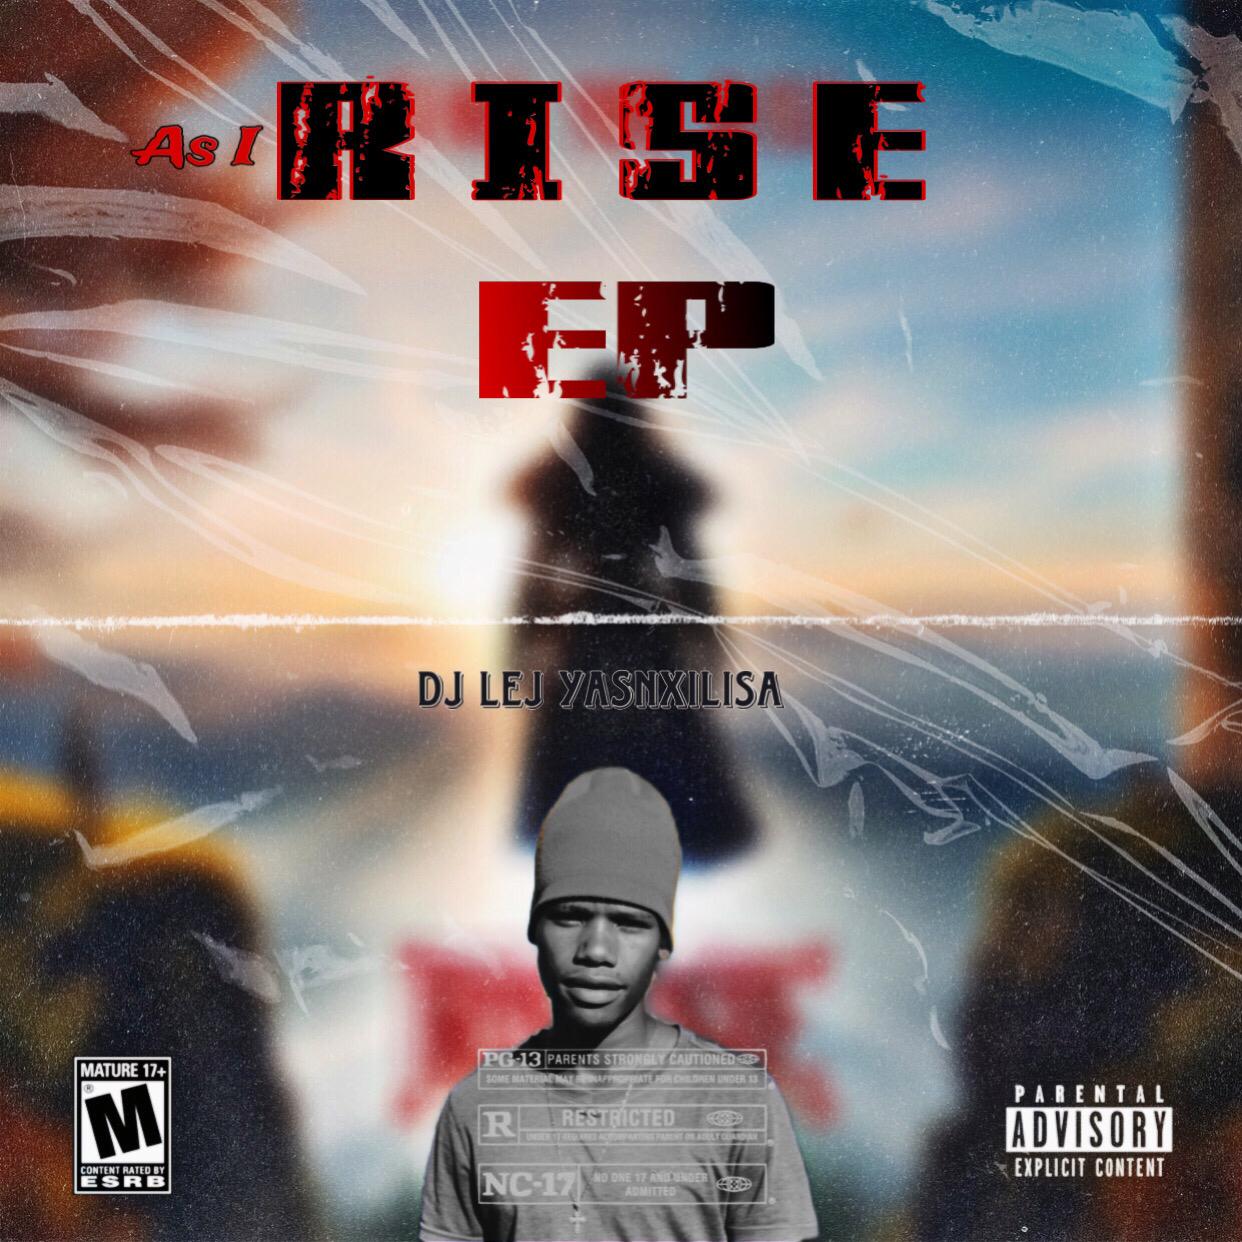 As I Rise EP - Dj Lej (YasNxilisa)